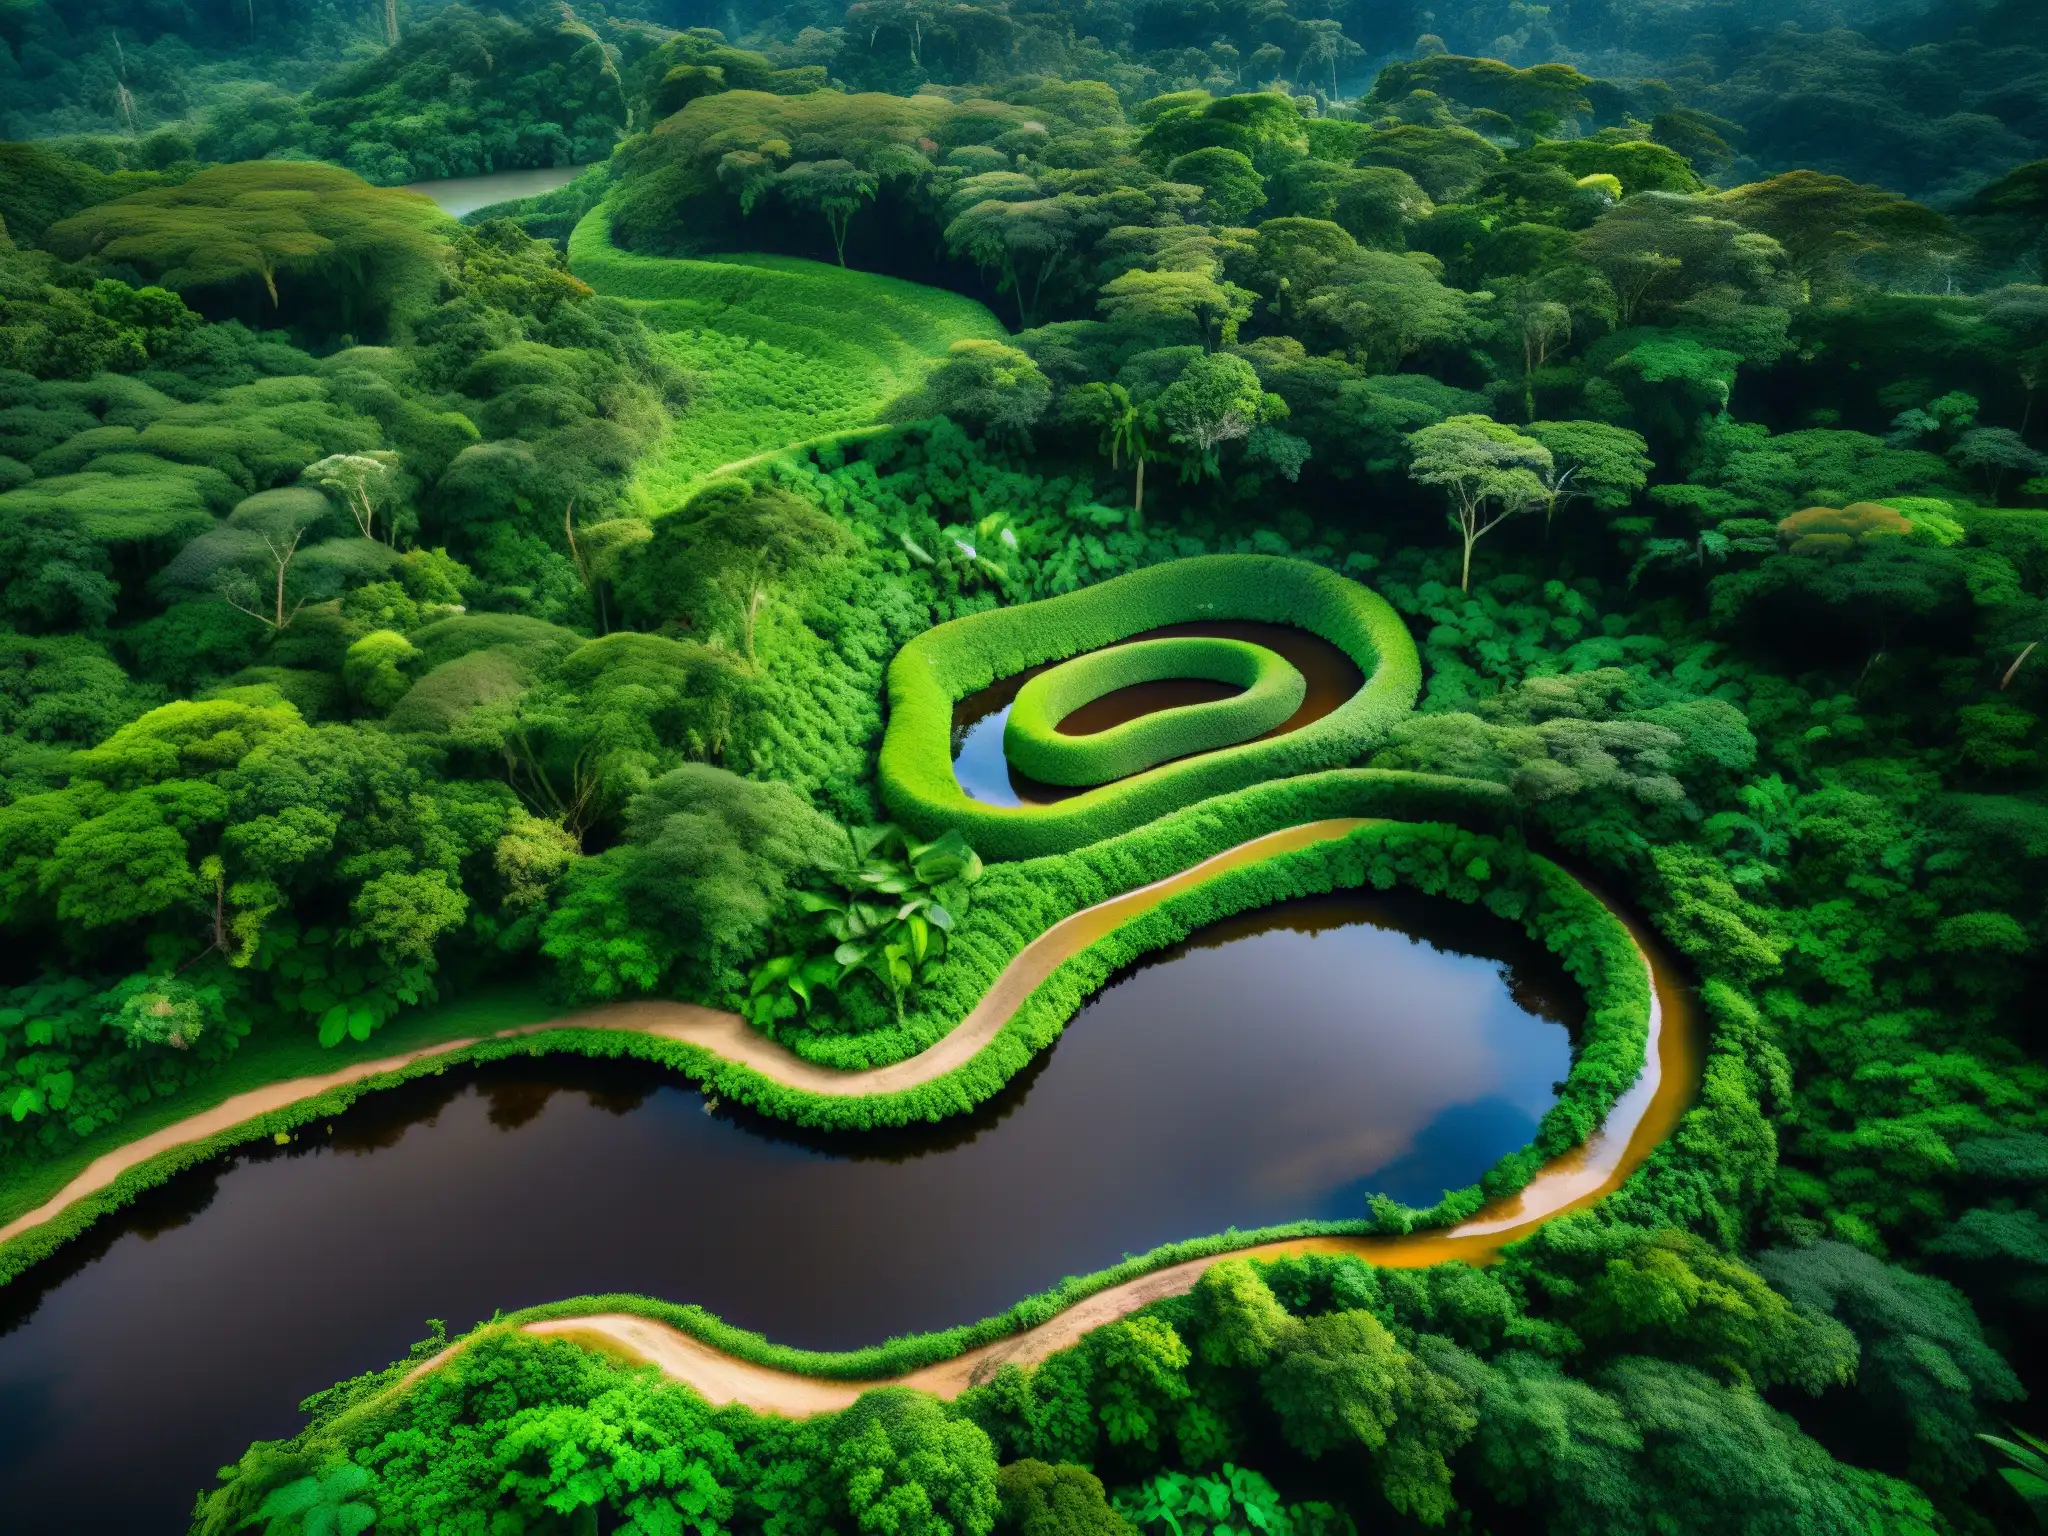 La majestuosa selva amazónica con el río serpenteante y la leyenda de Yacumama, símbolo de origen y verdad en la cultura amazónica